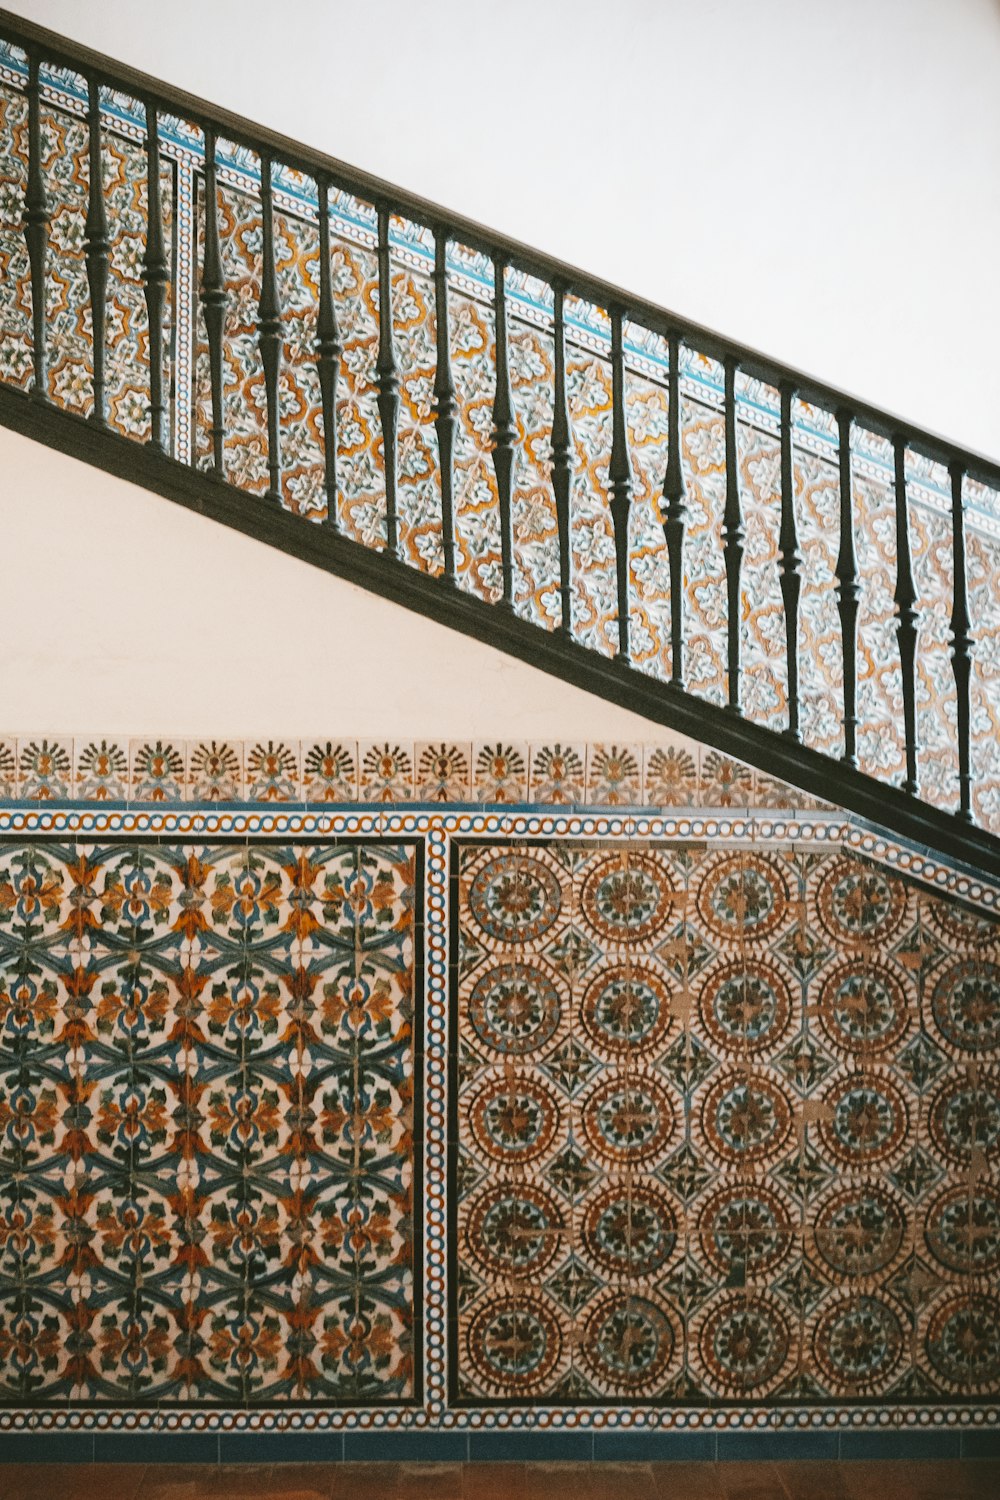 Marokkanisches Design an der Wand